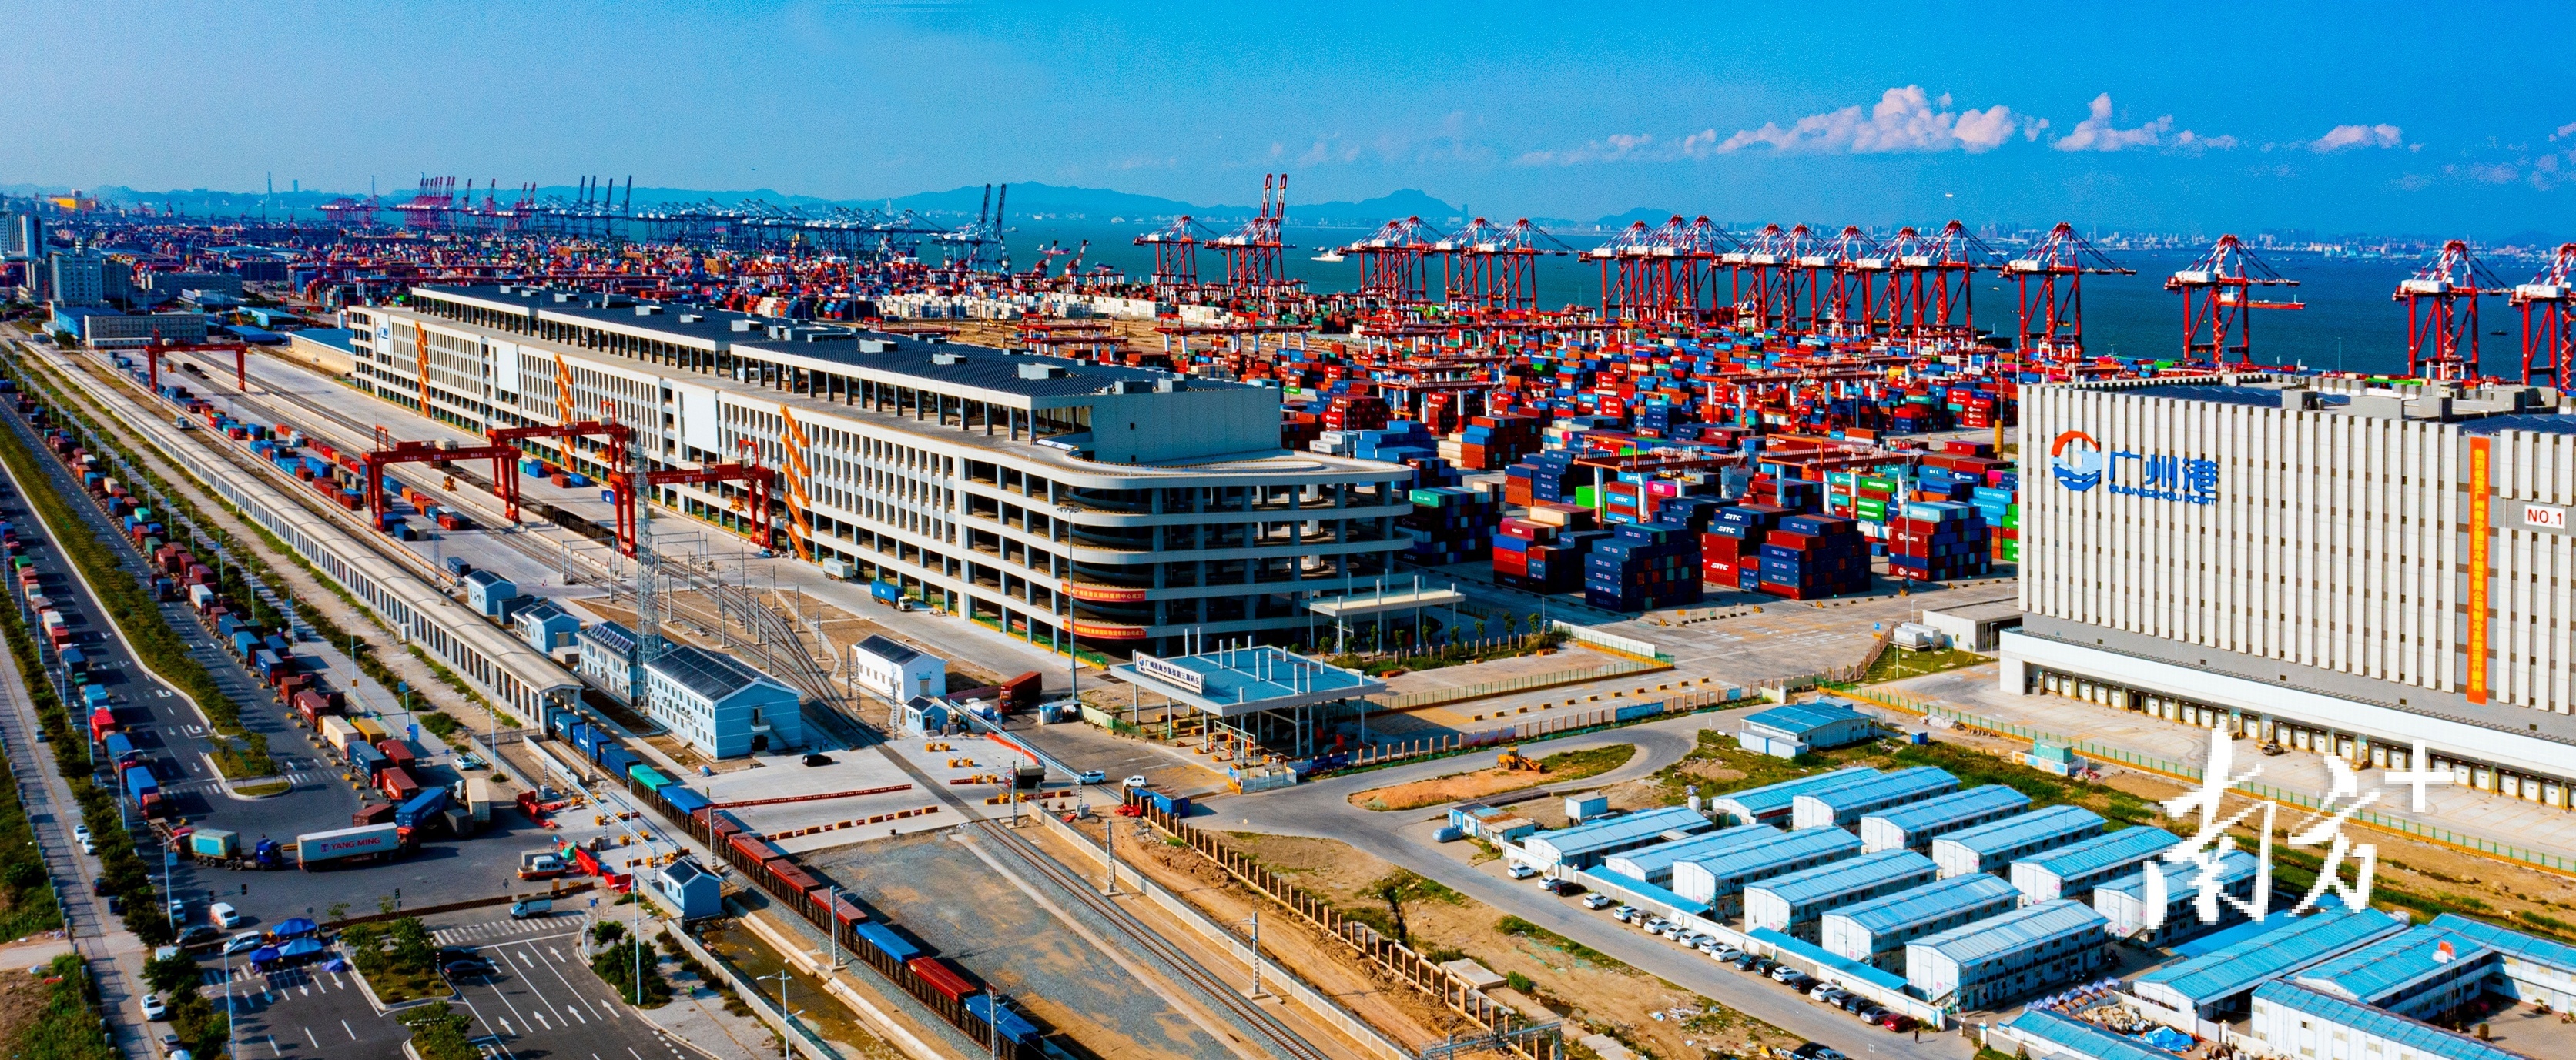 广州港南沙港区集装箱码头,国际物流园区,铁路等集疏运体系完善.